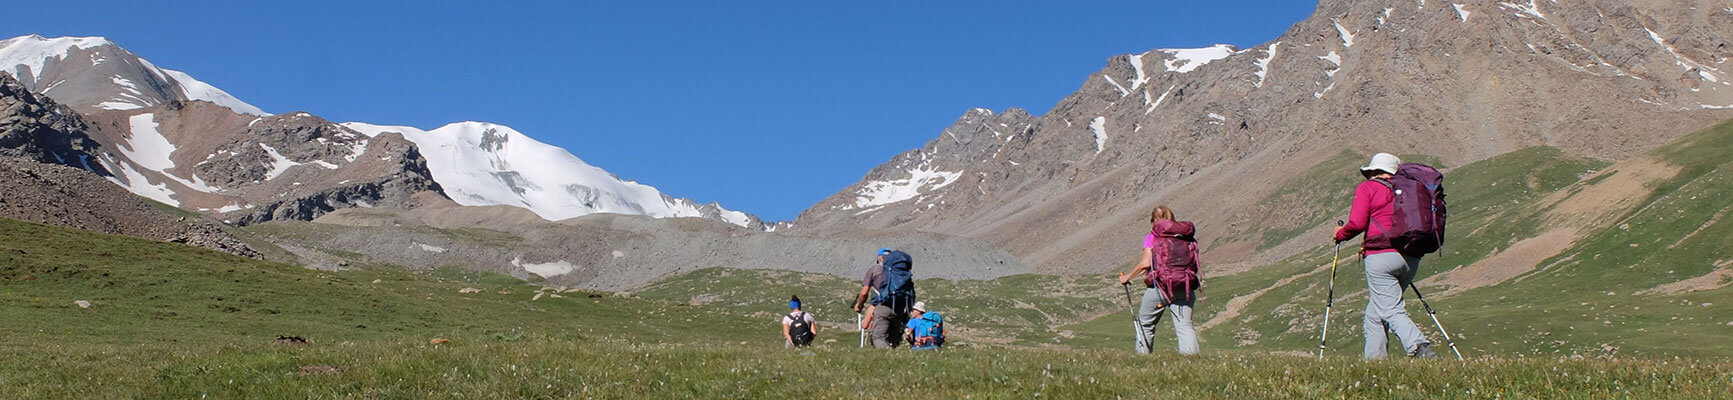 voyage kirghizistan, trek, randonnée, ski de randonnée et découverte culturelle, séjour kirghizistan, voyage en Kirghizie